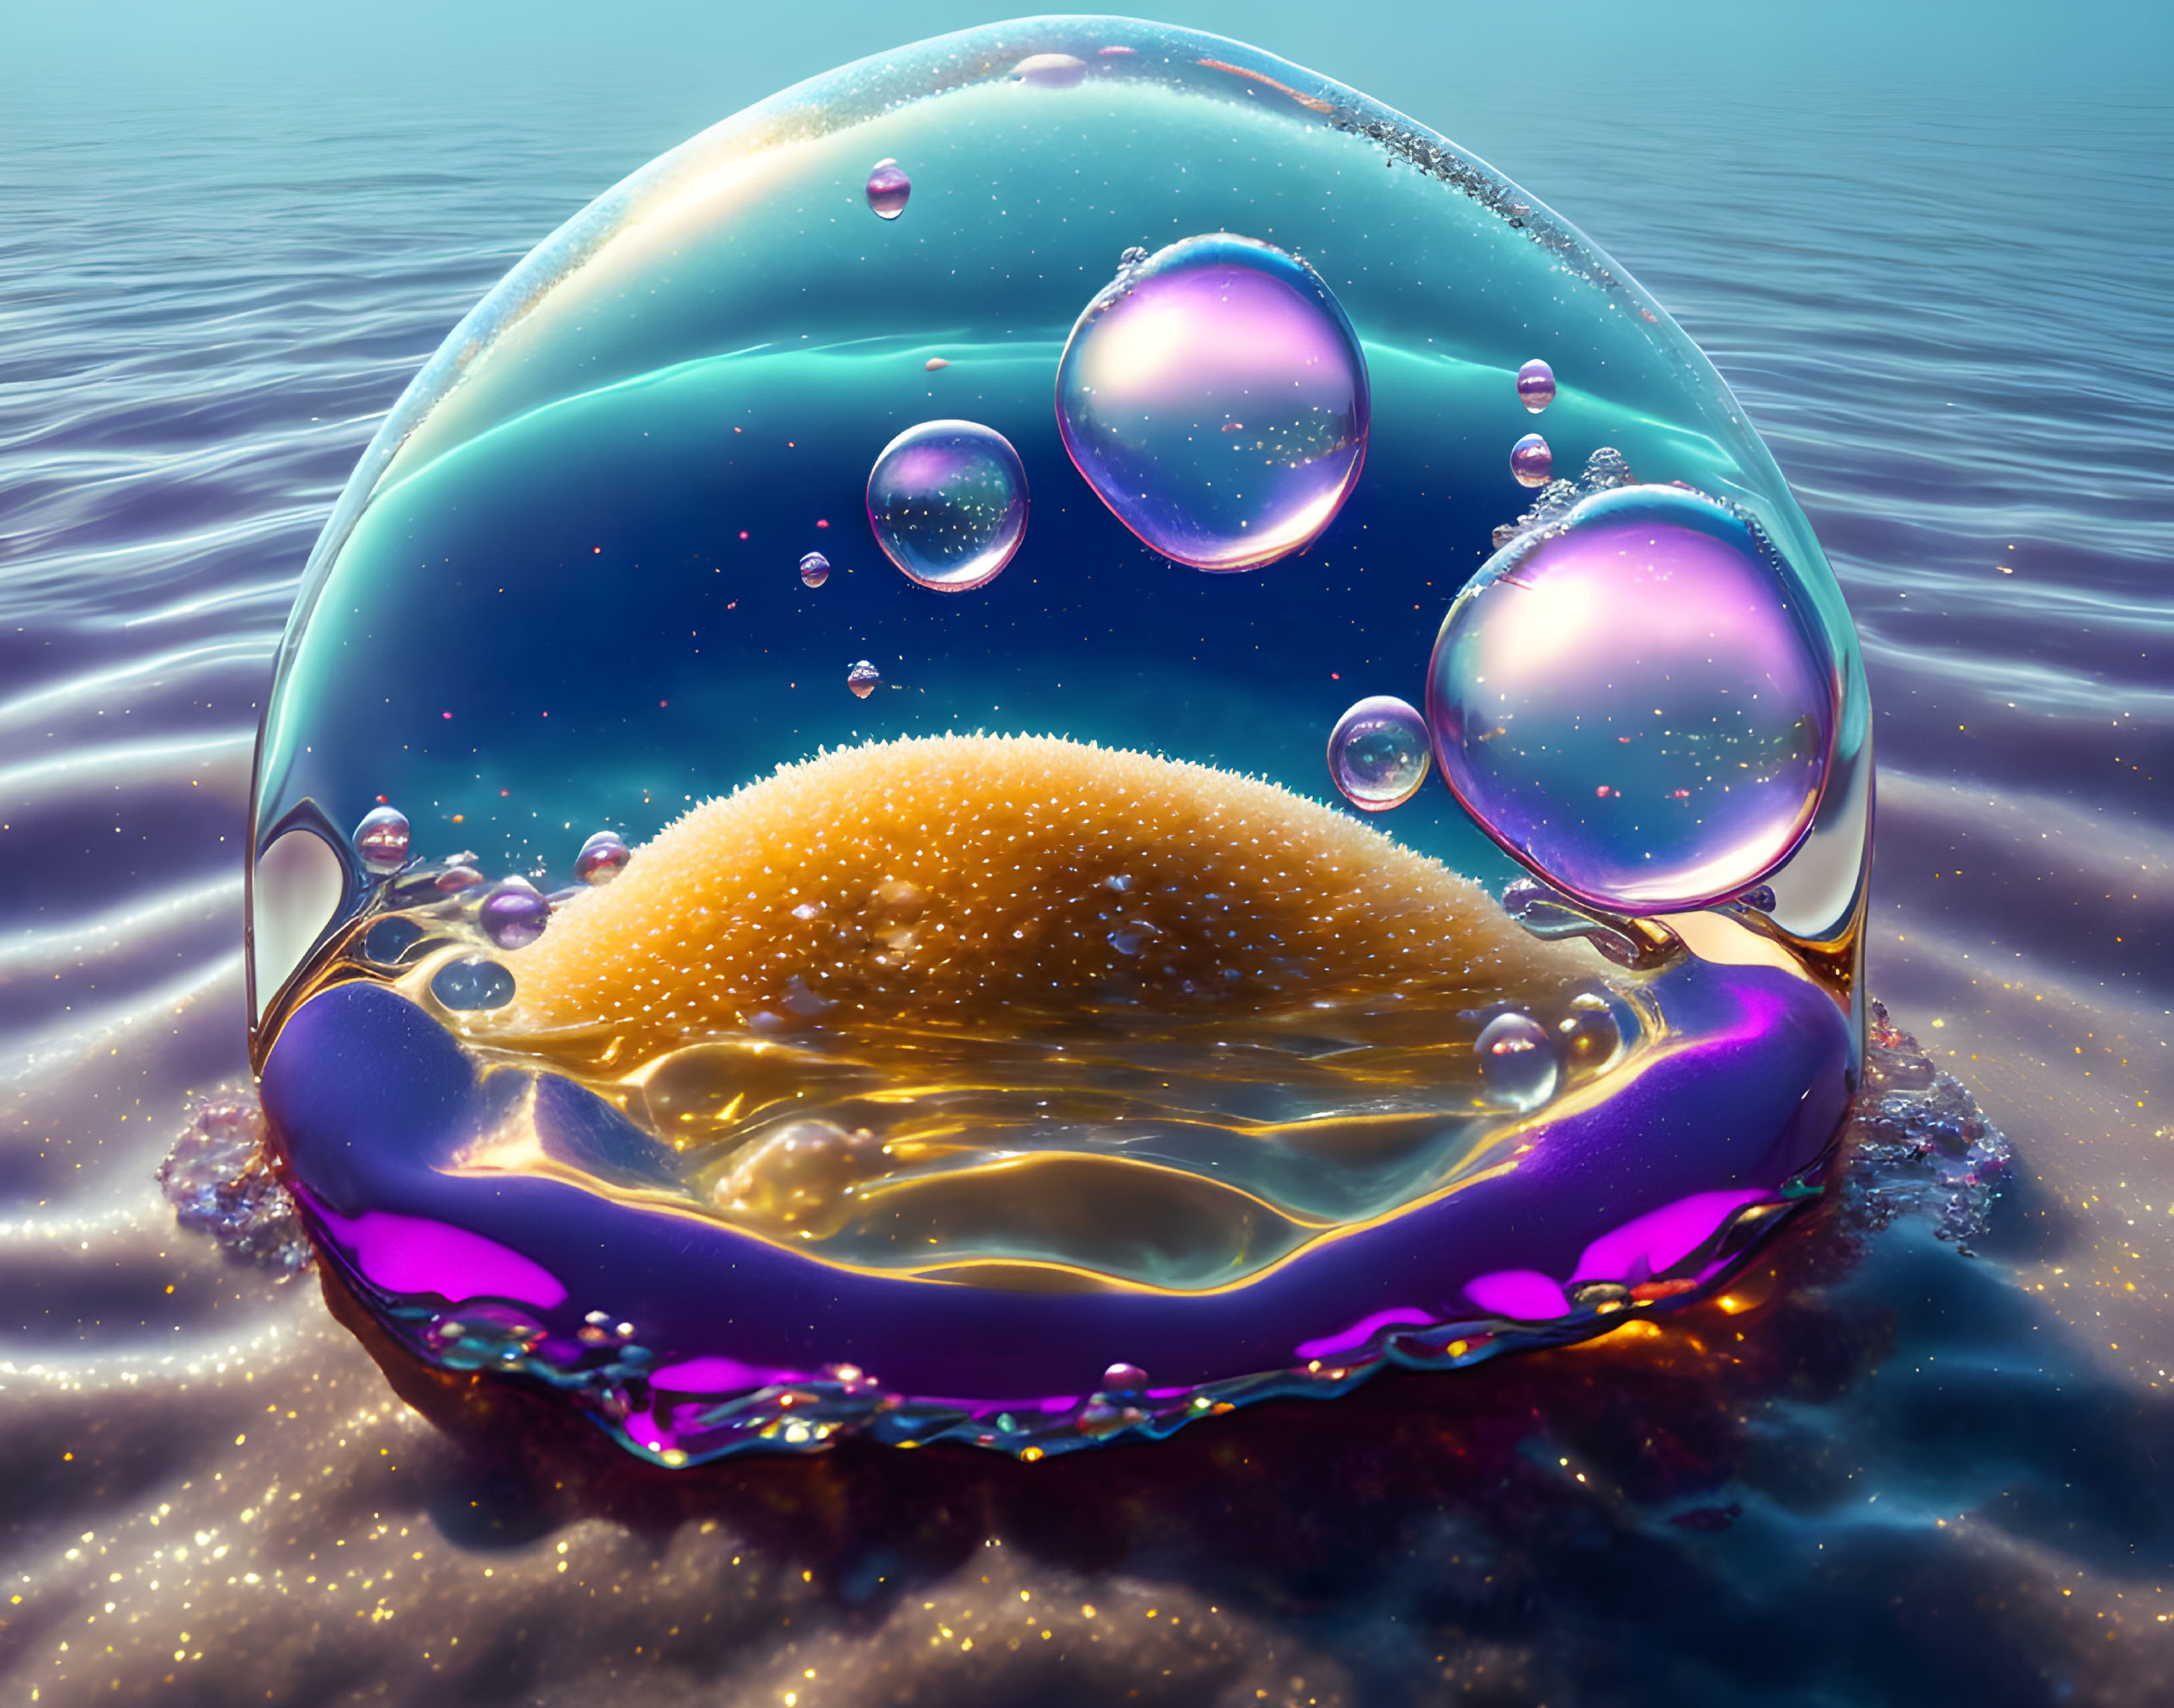 Bubble on a beach